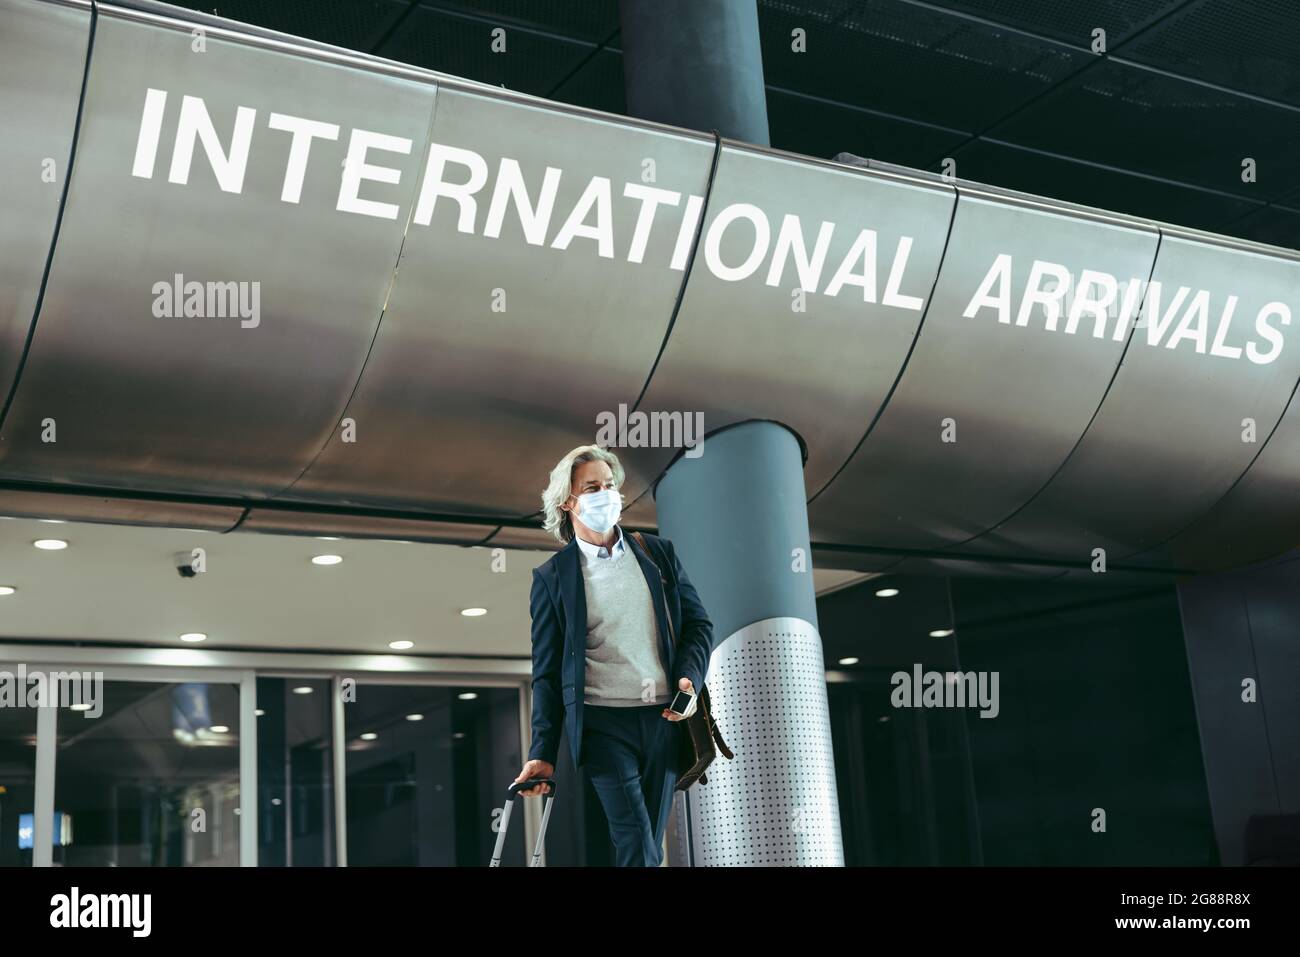 Uomo d'affari che esce dal cancello degli arrivi internazionali all'aeroporto. Uomo che indossa la maschera al terminal dell'aeroporto dopo la pandemia. Foto Stock